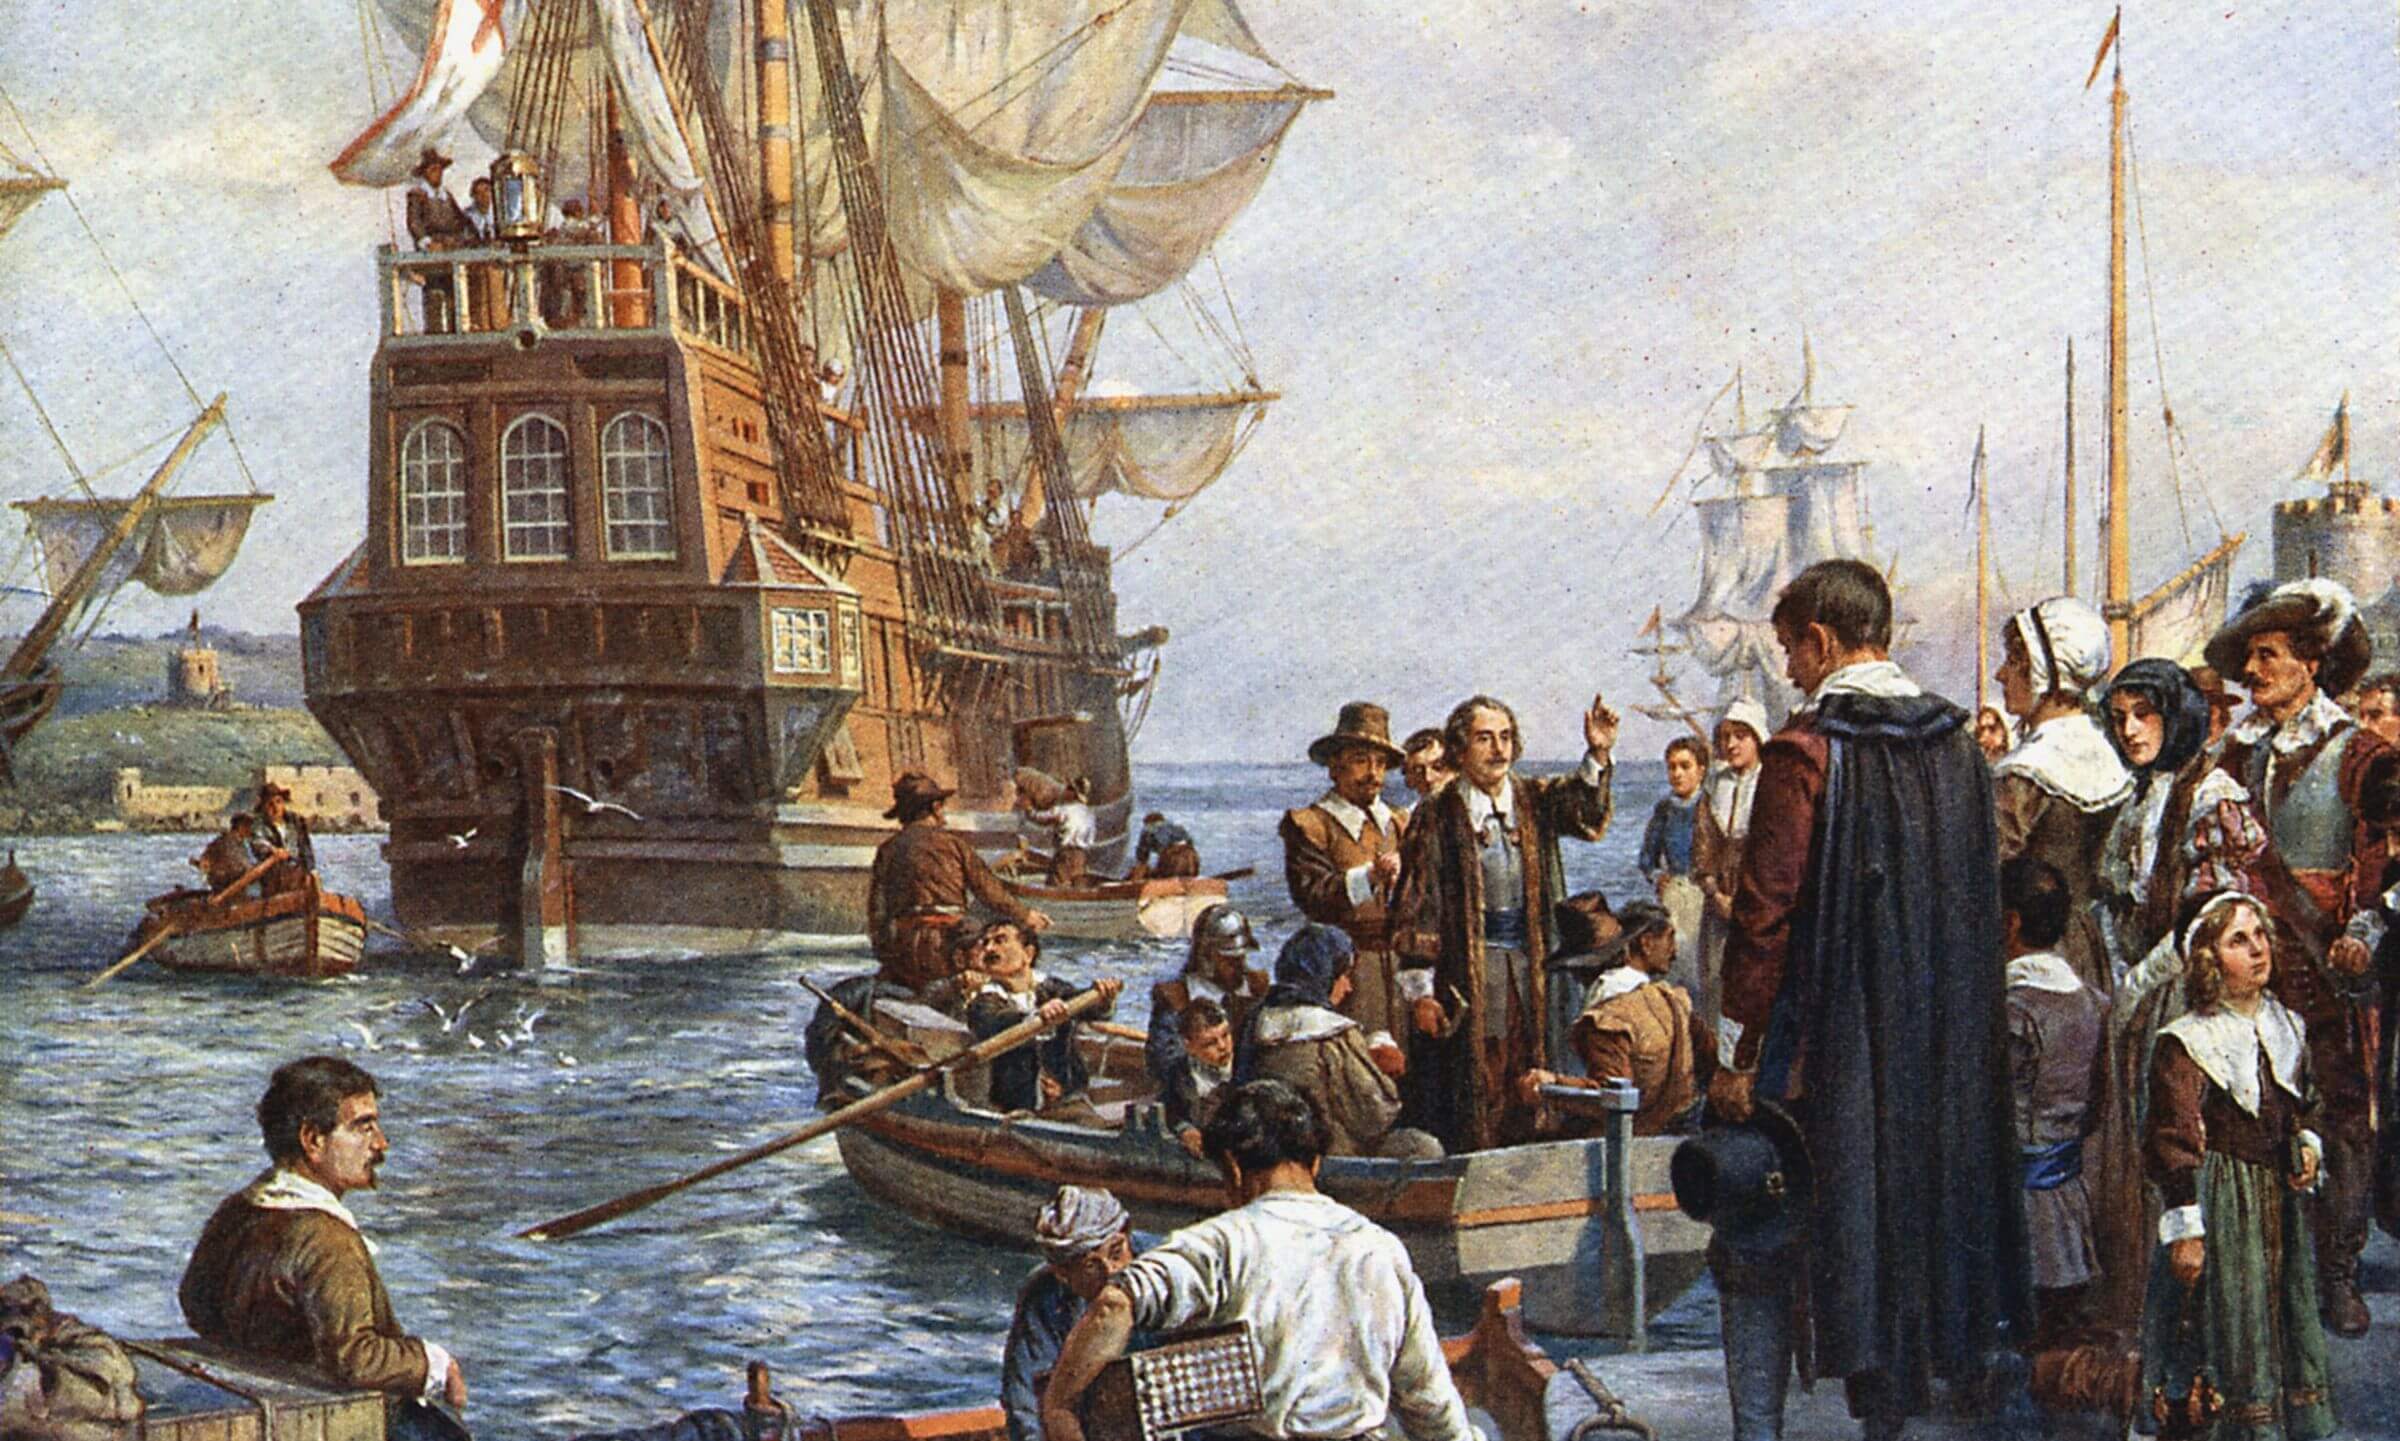 Pilgrims departing on Mayflower